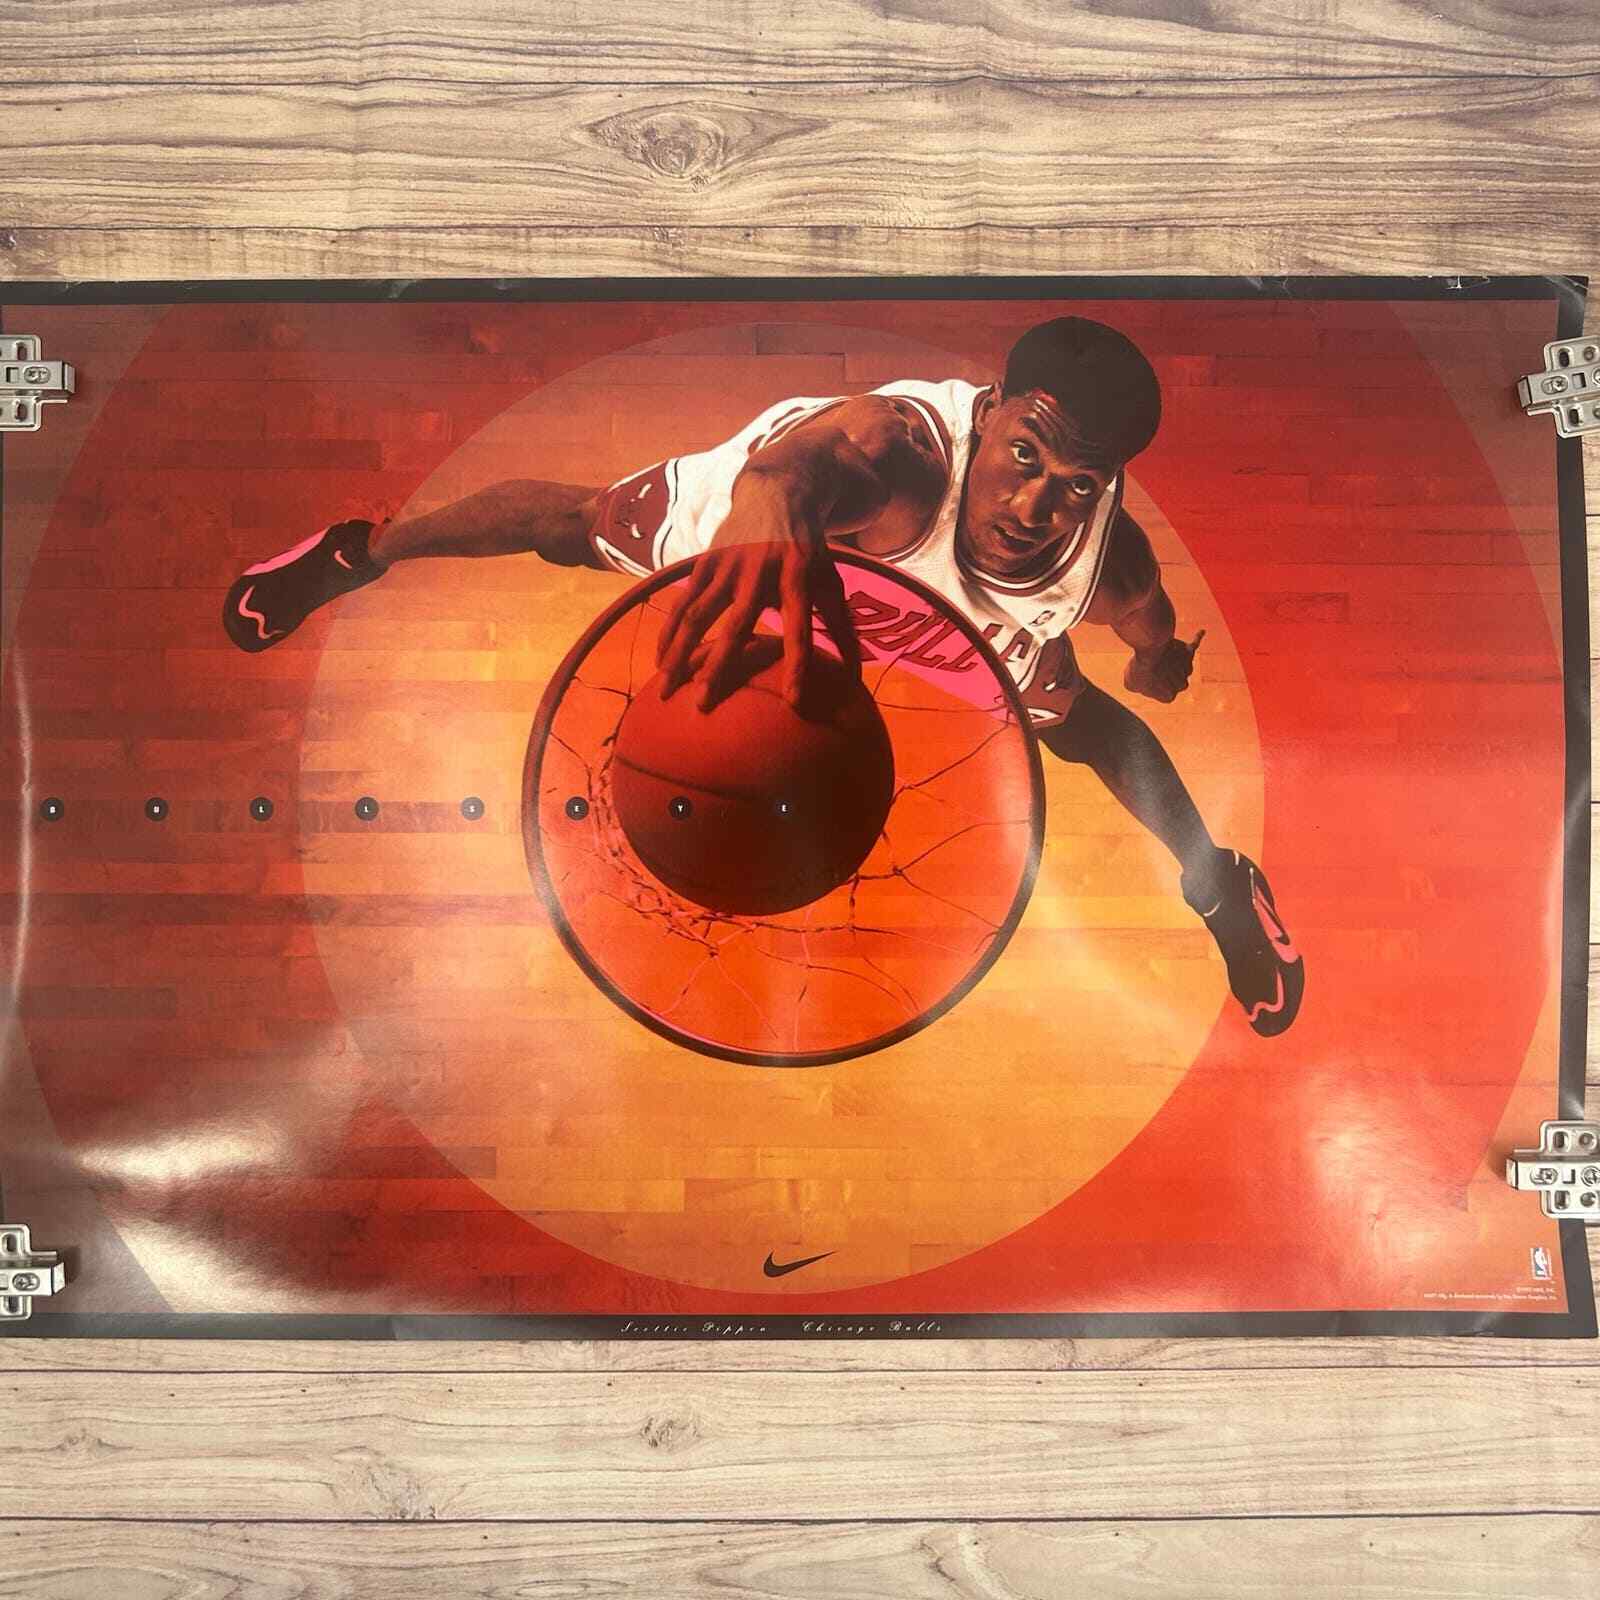 Vintage Chicago Bulls Scottie Pippen Sports Poster Nike 1995 Bullseye Basketball